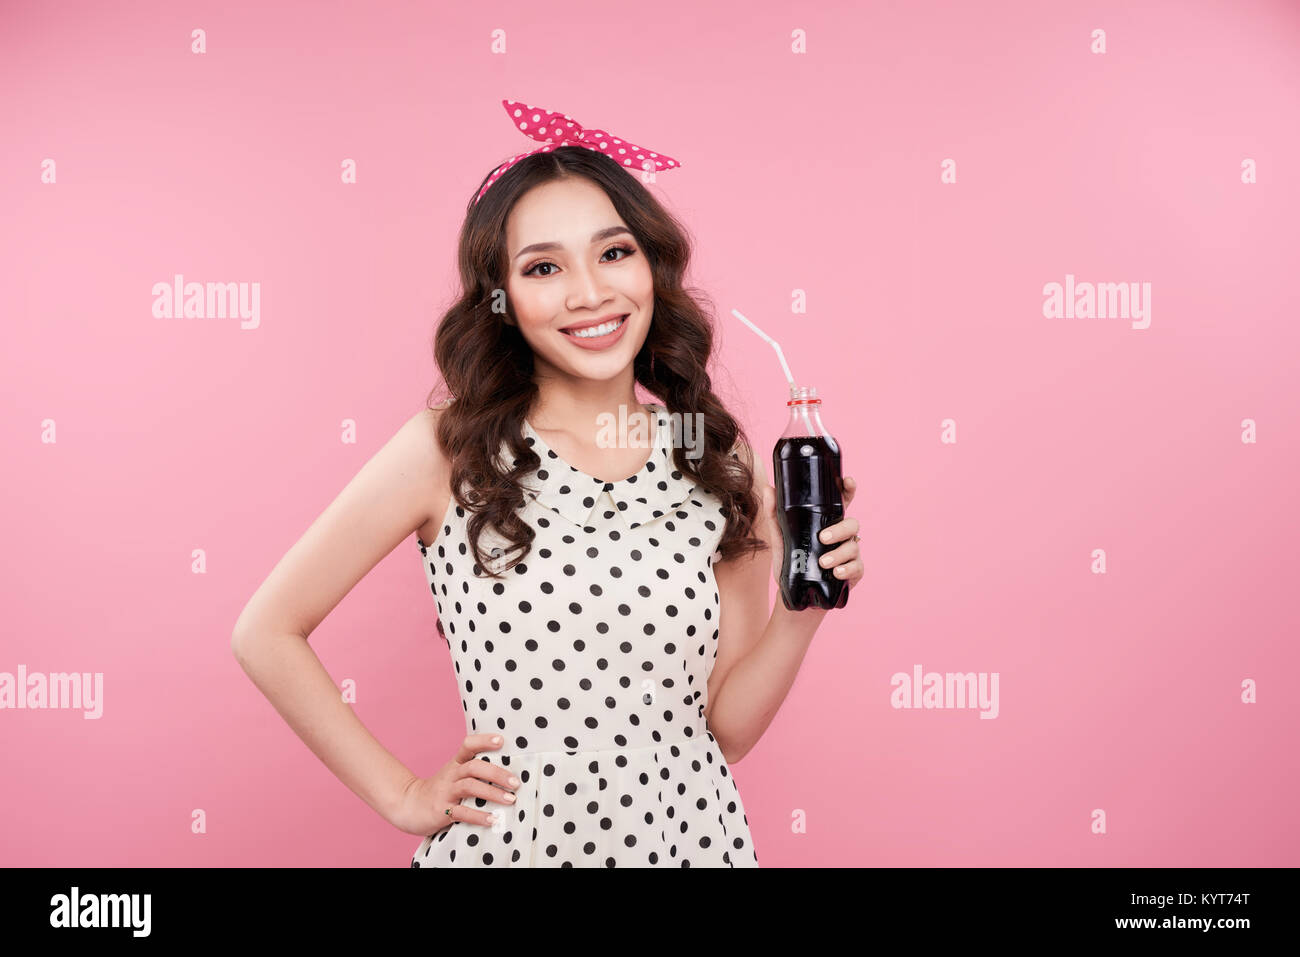 Fashion asian woman holding bouteille de coke, posant contre fond rose Banque D'Images